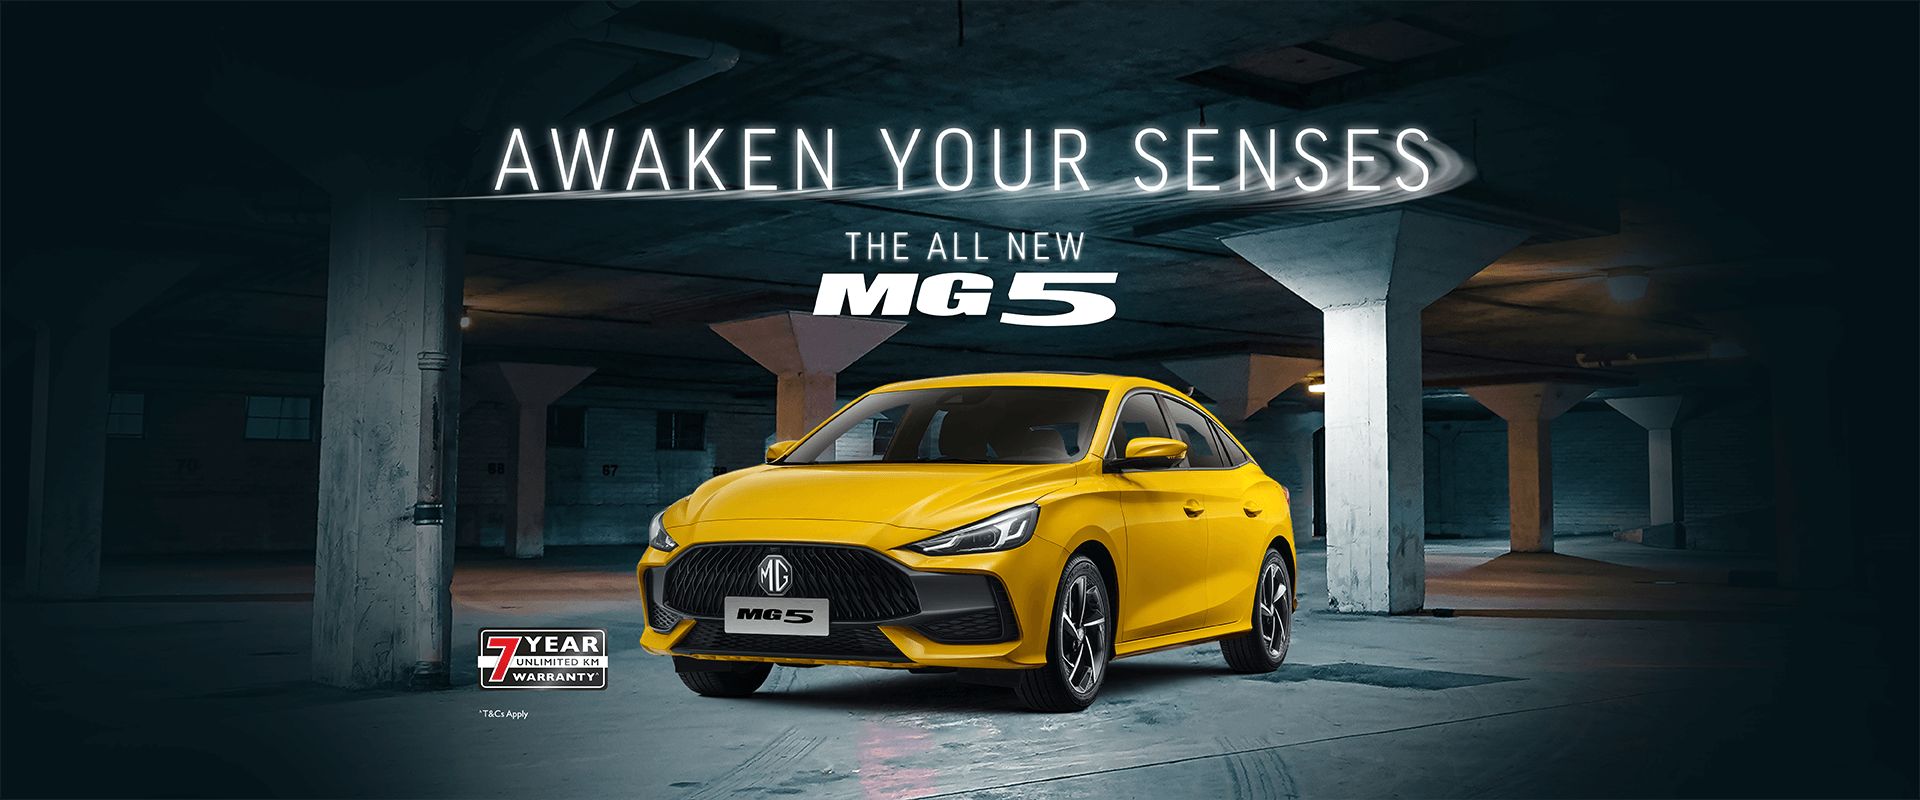 The All New MG5. Awaken Your Senses.